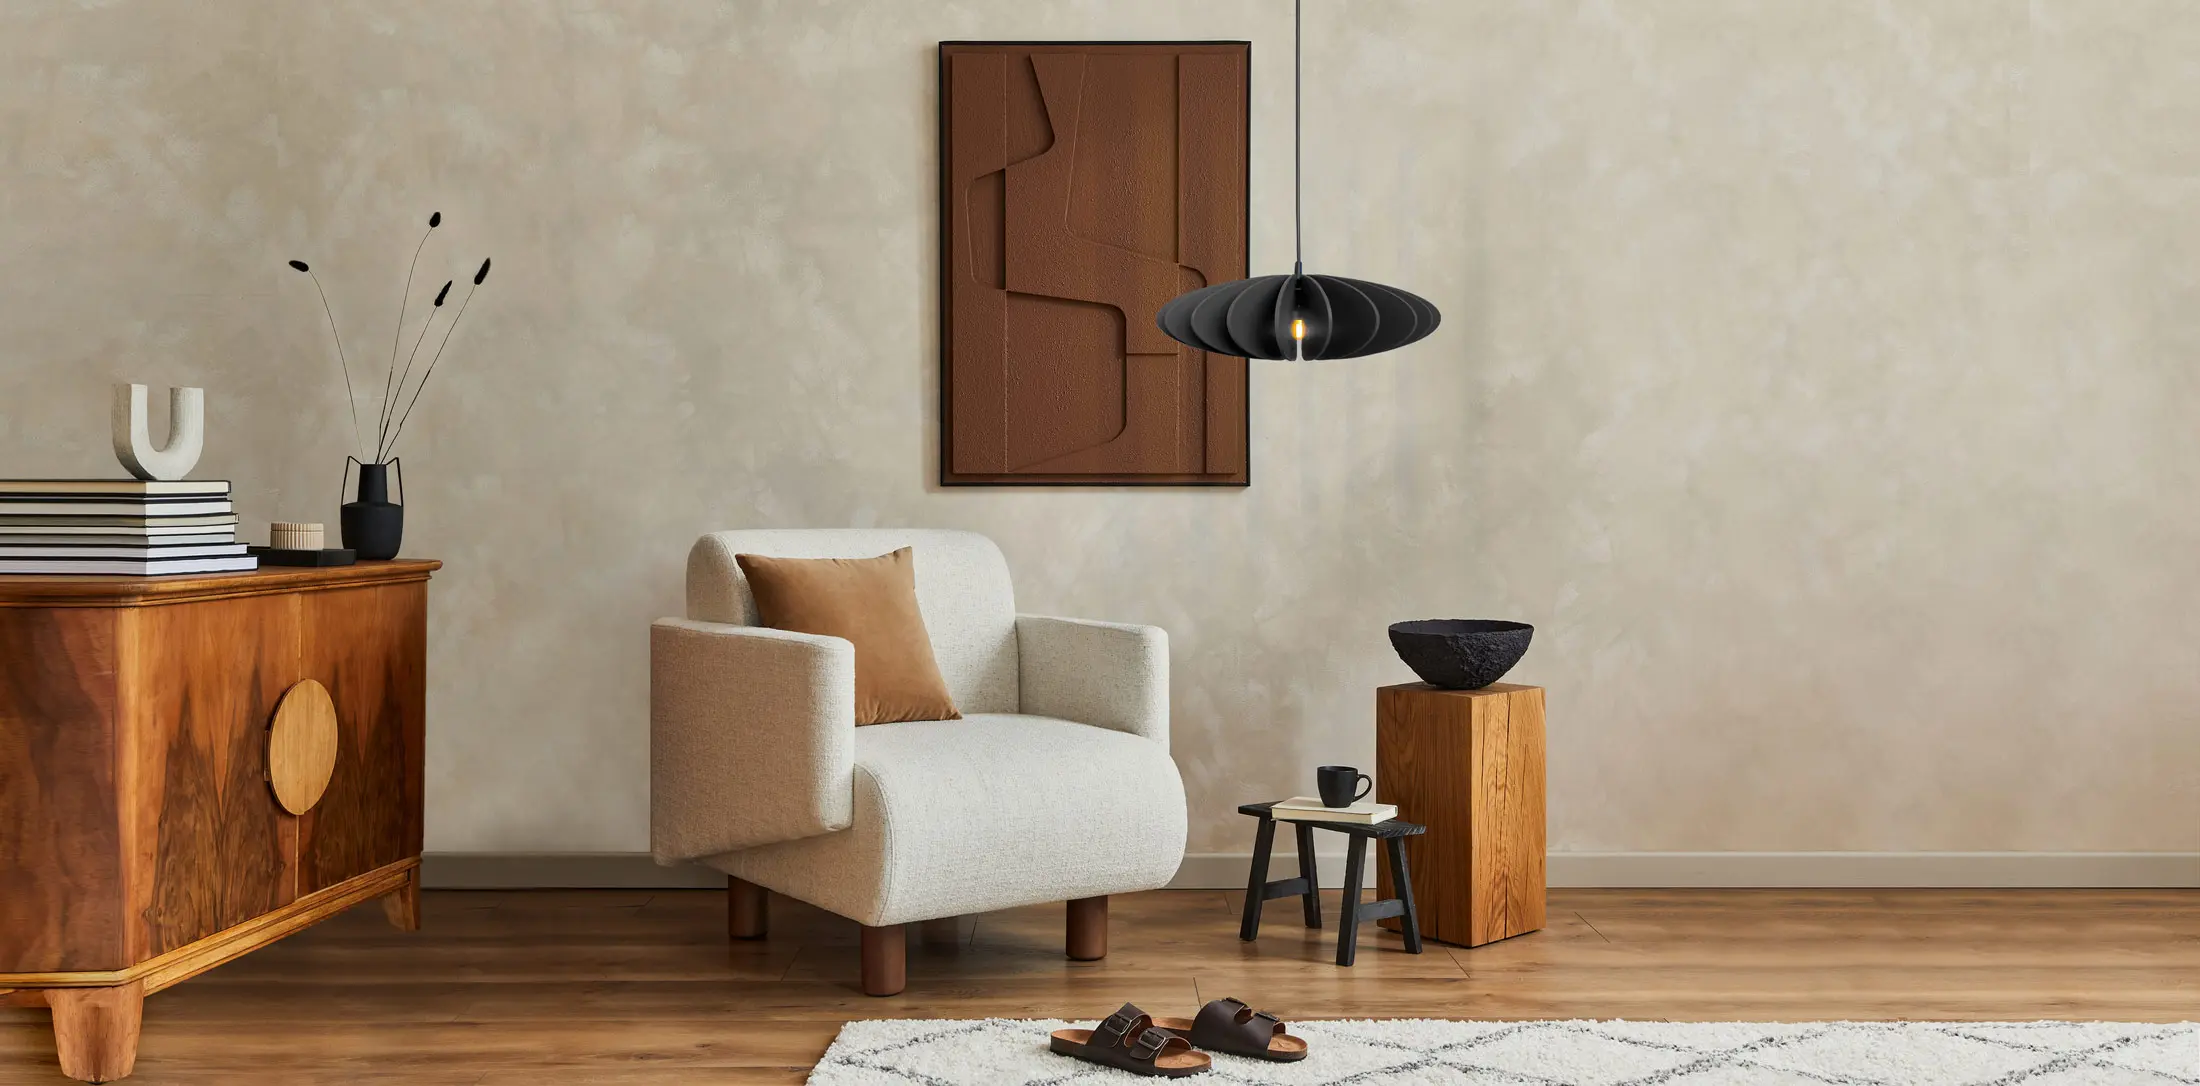 Stilvoll eingerichtetes Wohnzimmer mit moderner CAHAYA Pendelleuchte, Skulptur auf Holztisch und gemütlichem Sessel von Jennifer Miller